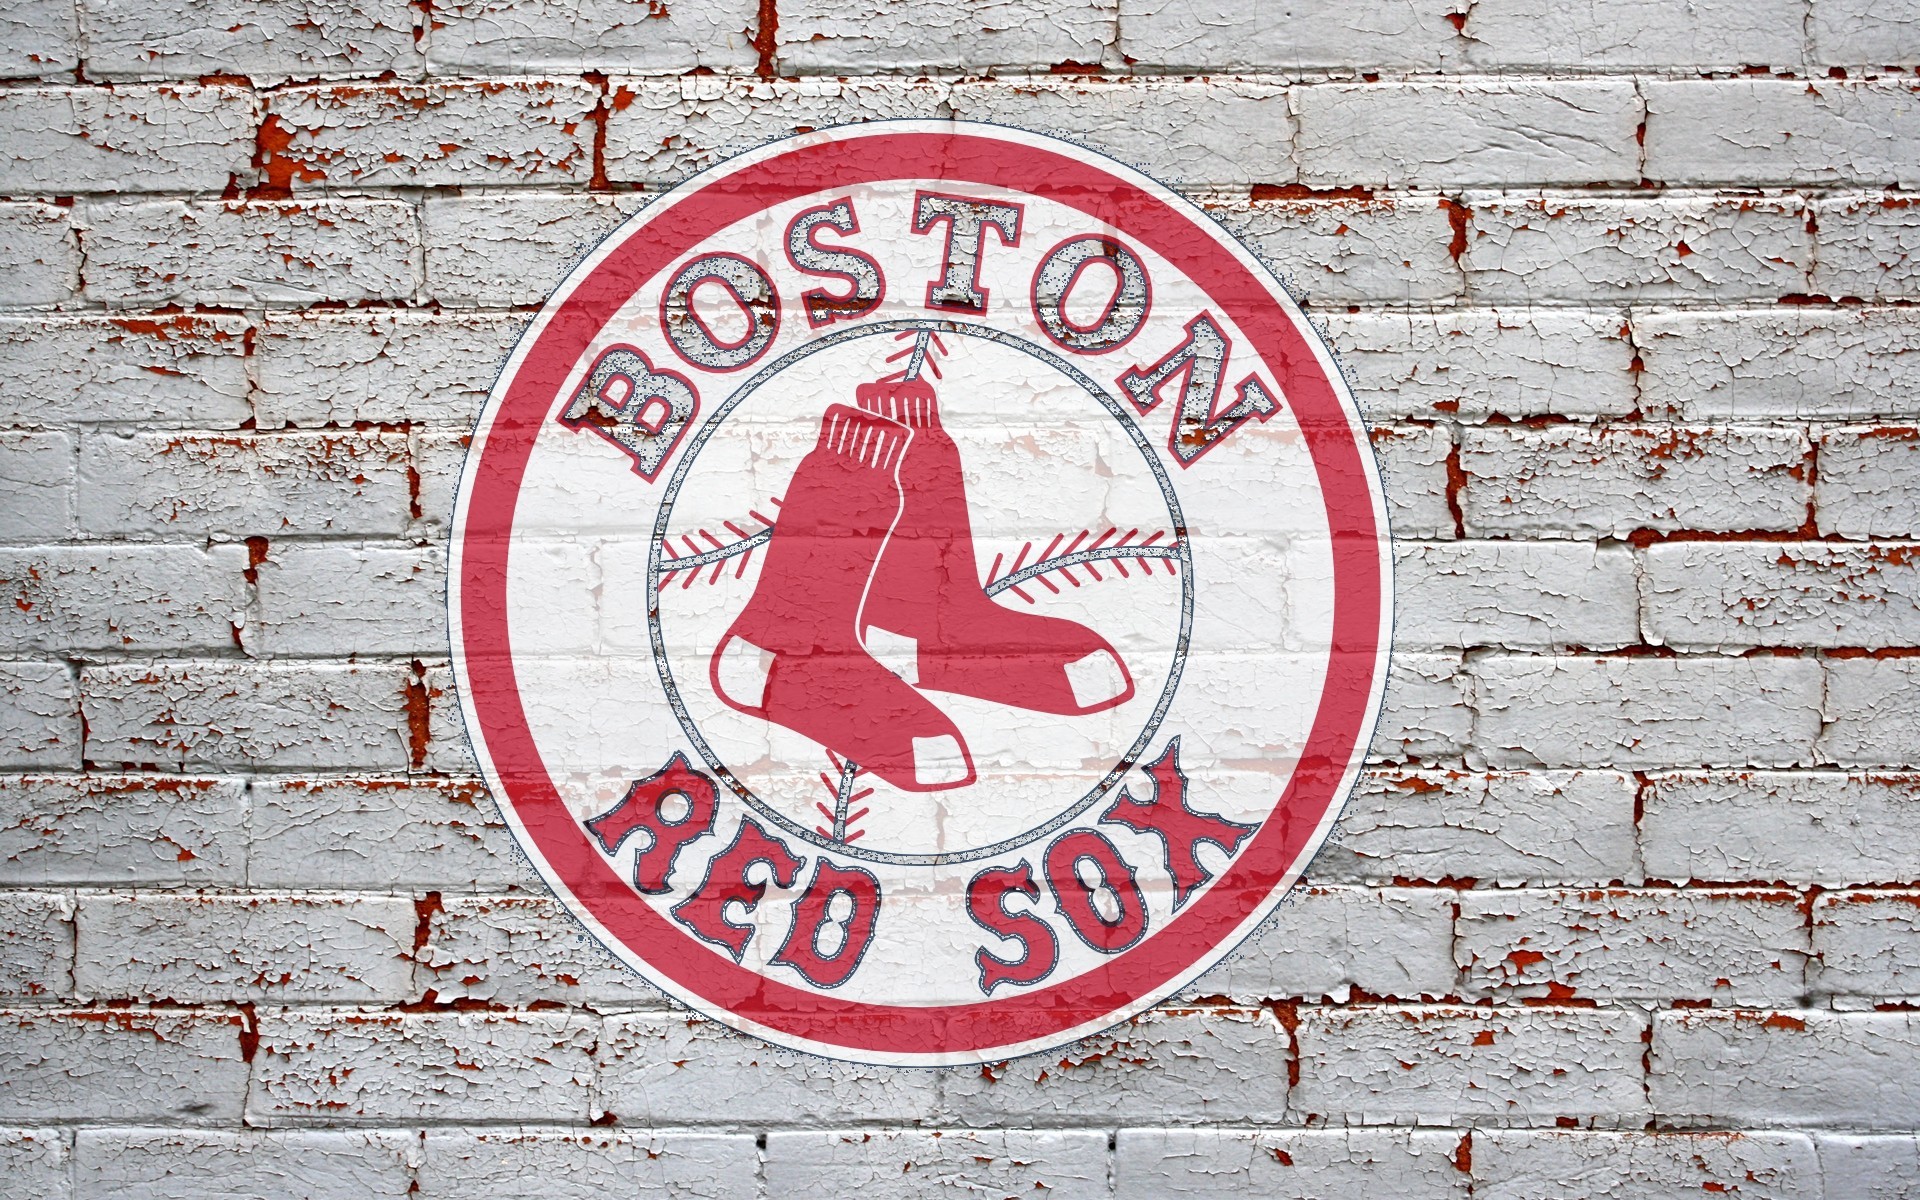 1920x1200 Red Sox Wallpaper